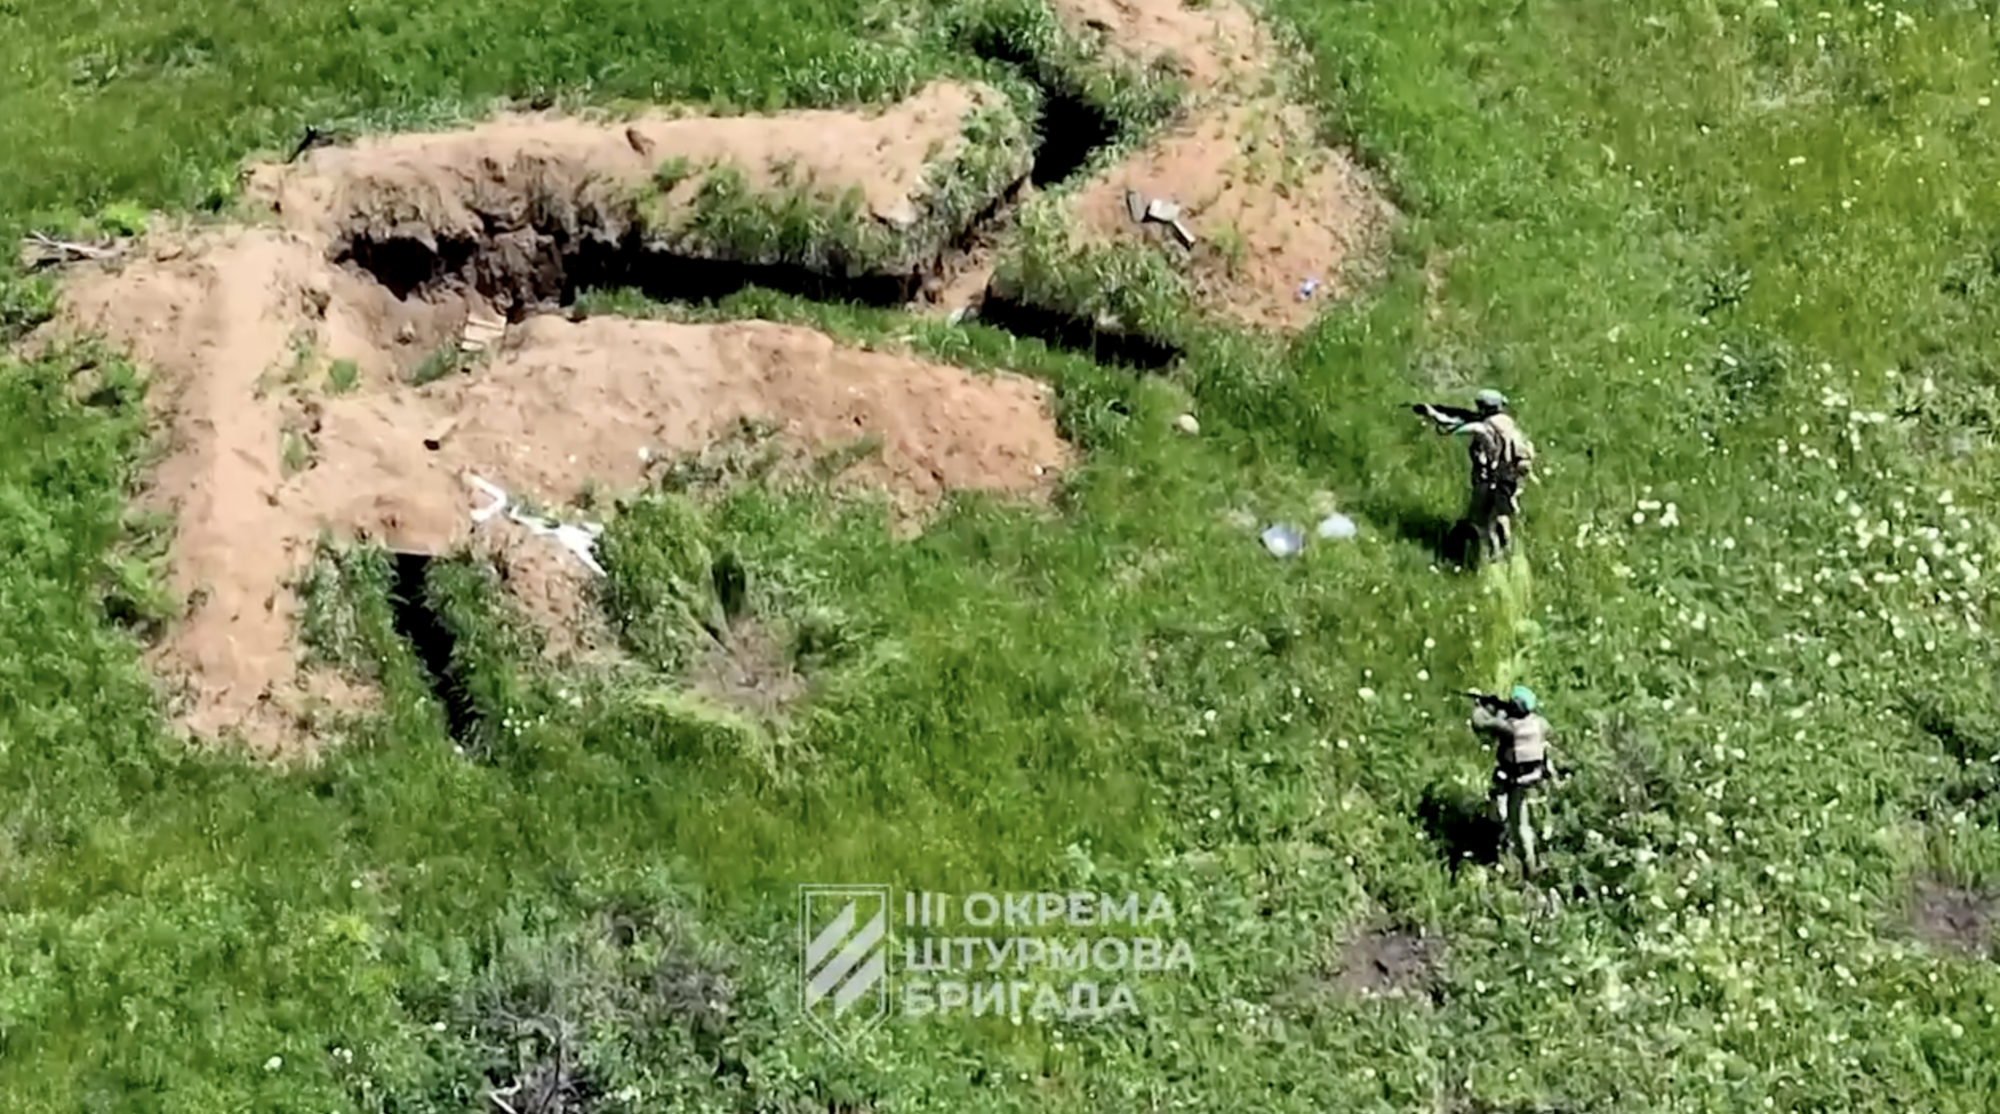 Враг понес значительные потери: Сырский показал слаженную работу защитников Украины под Бахмутом. Видео